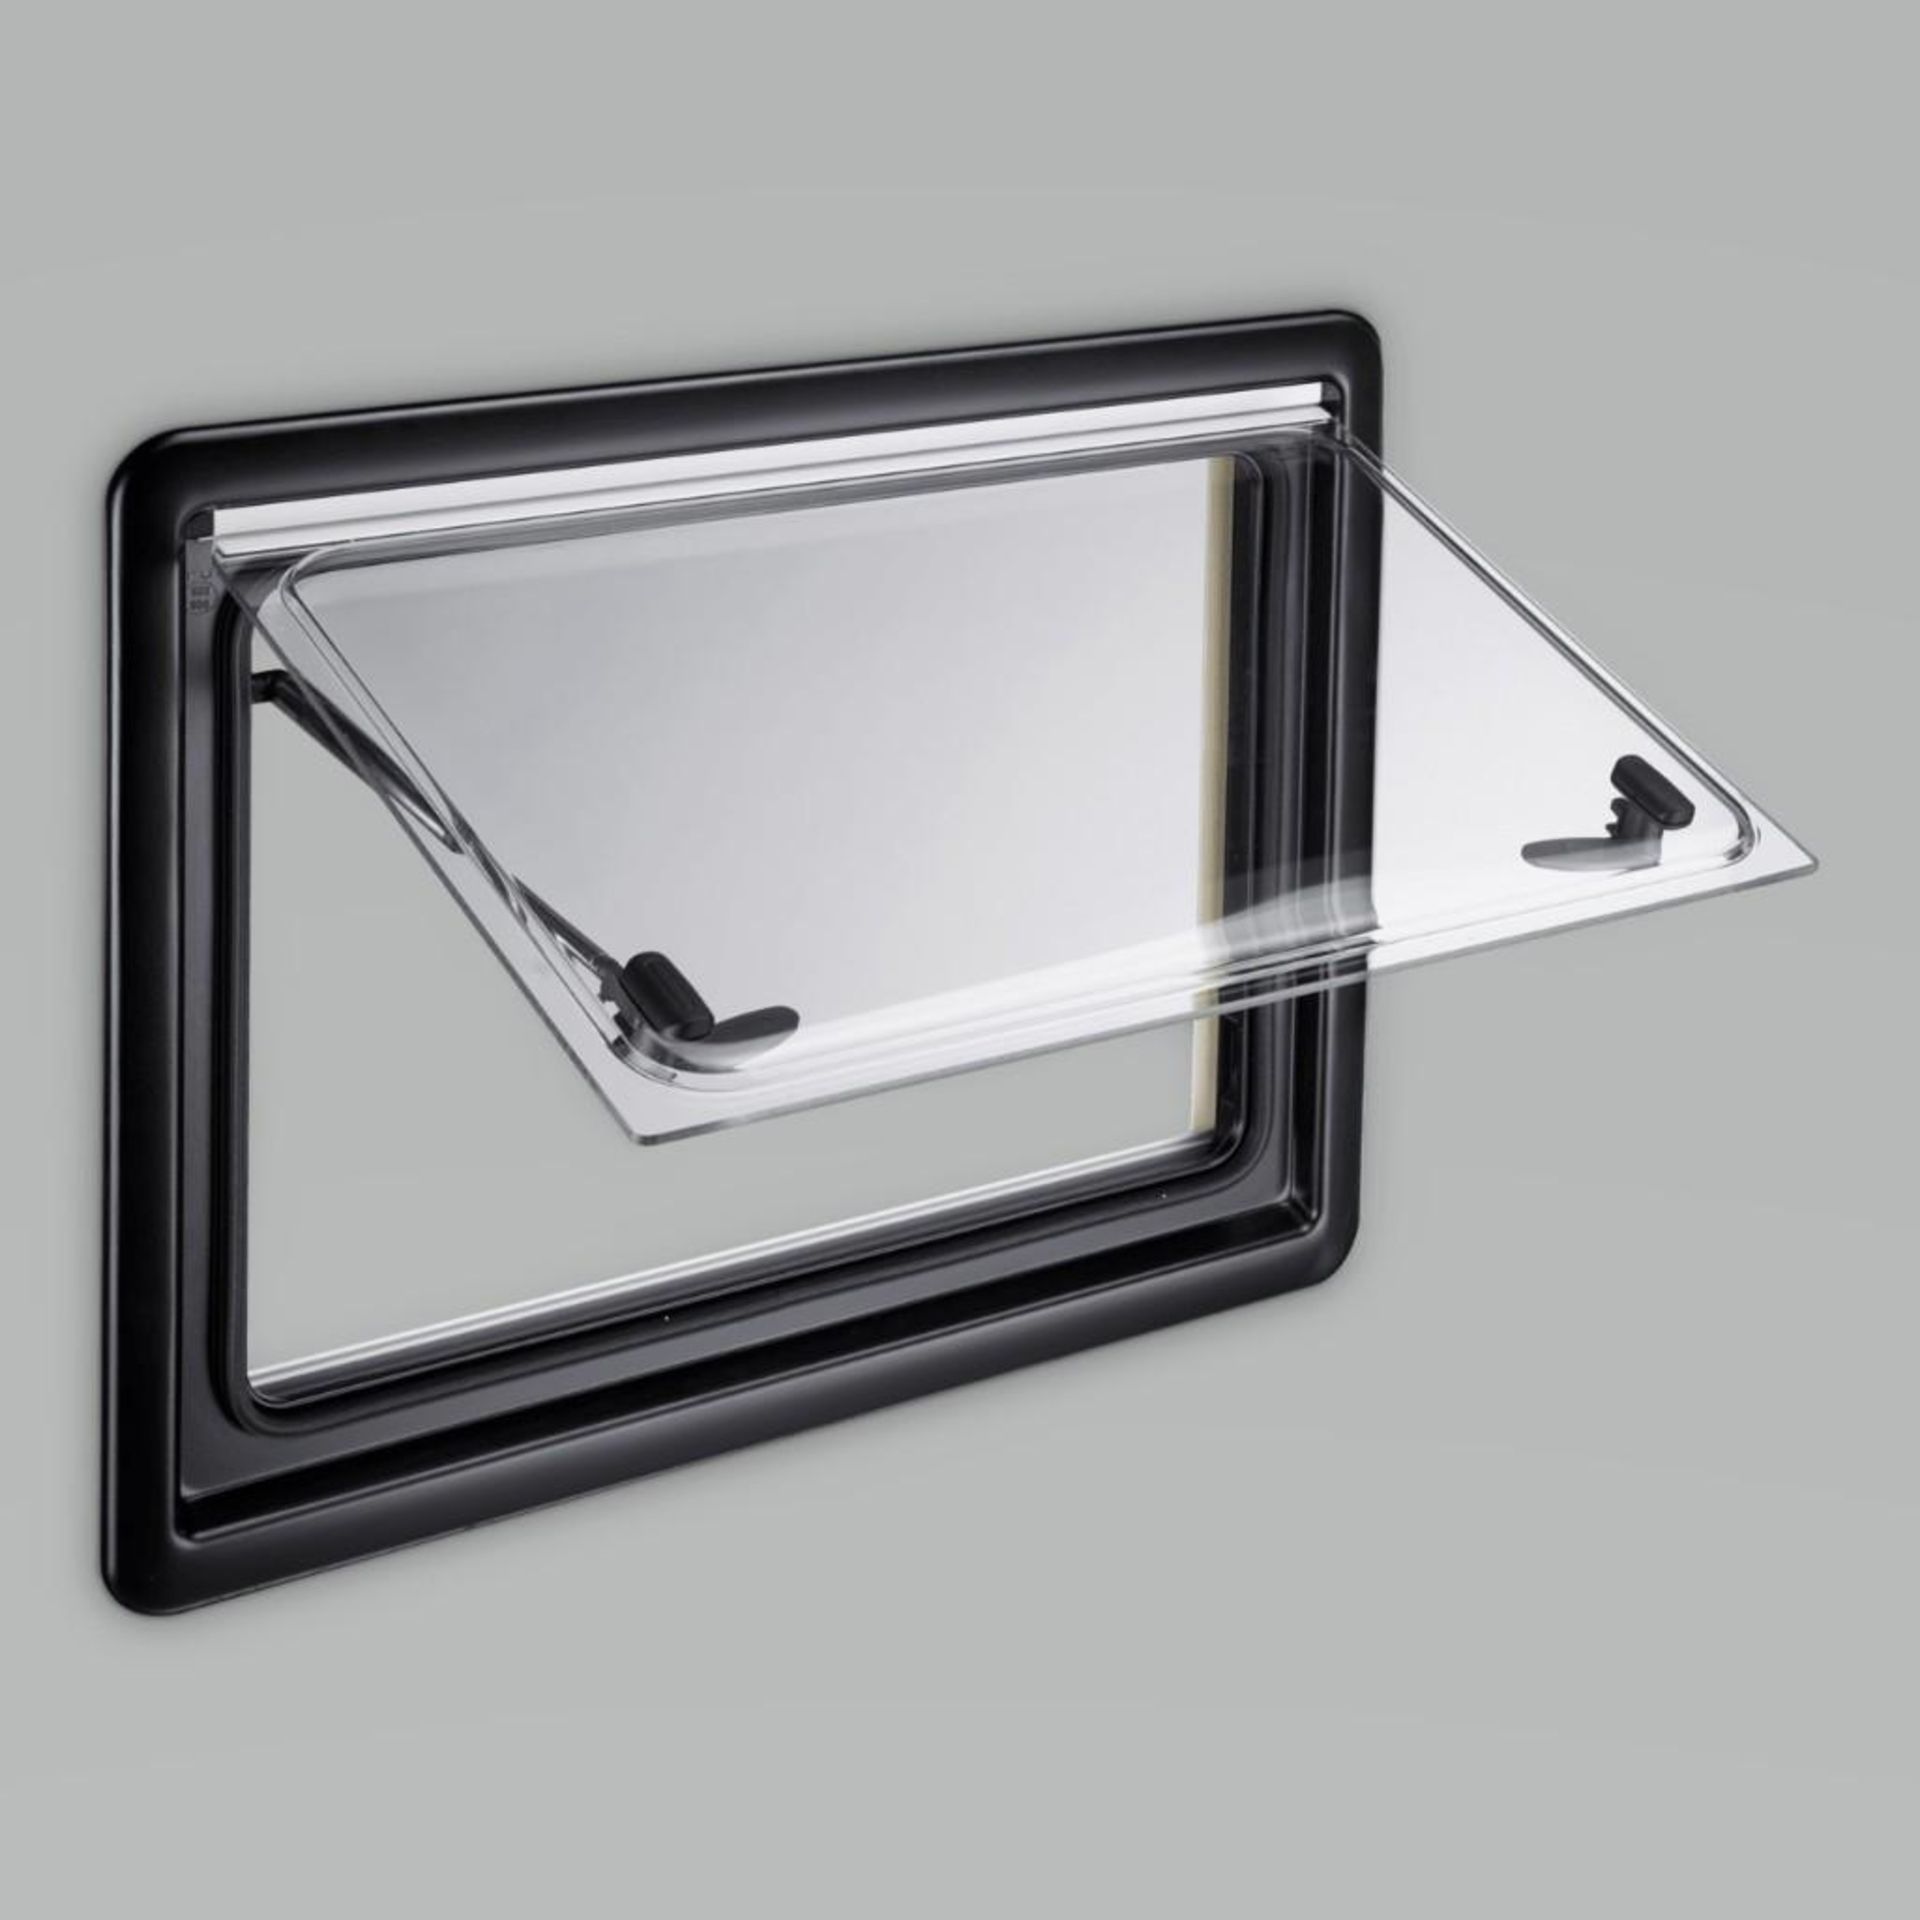 Qty 20 - Dometic window. S4 series. S4DOM0401550F. 800mm x 350mm. 26mm. New in box.